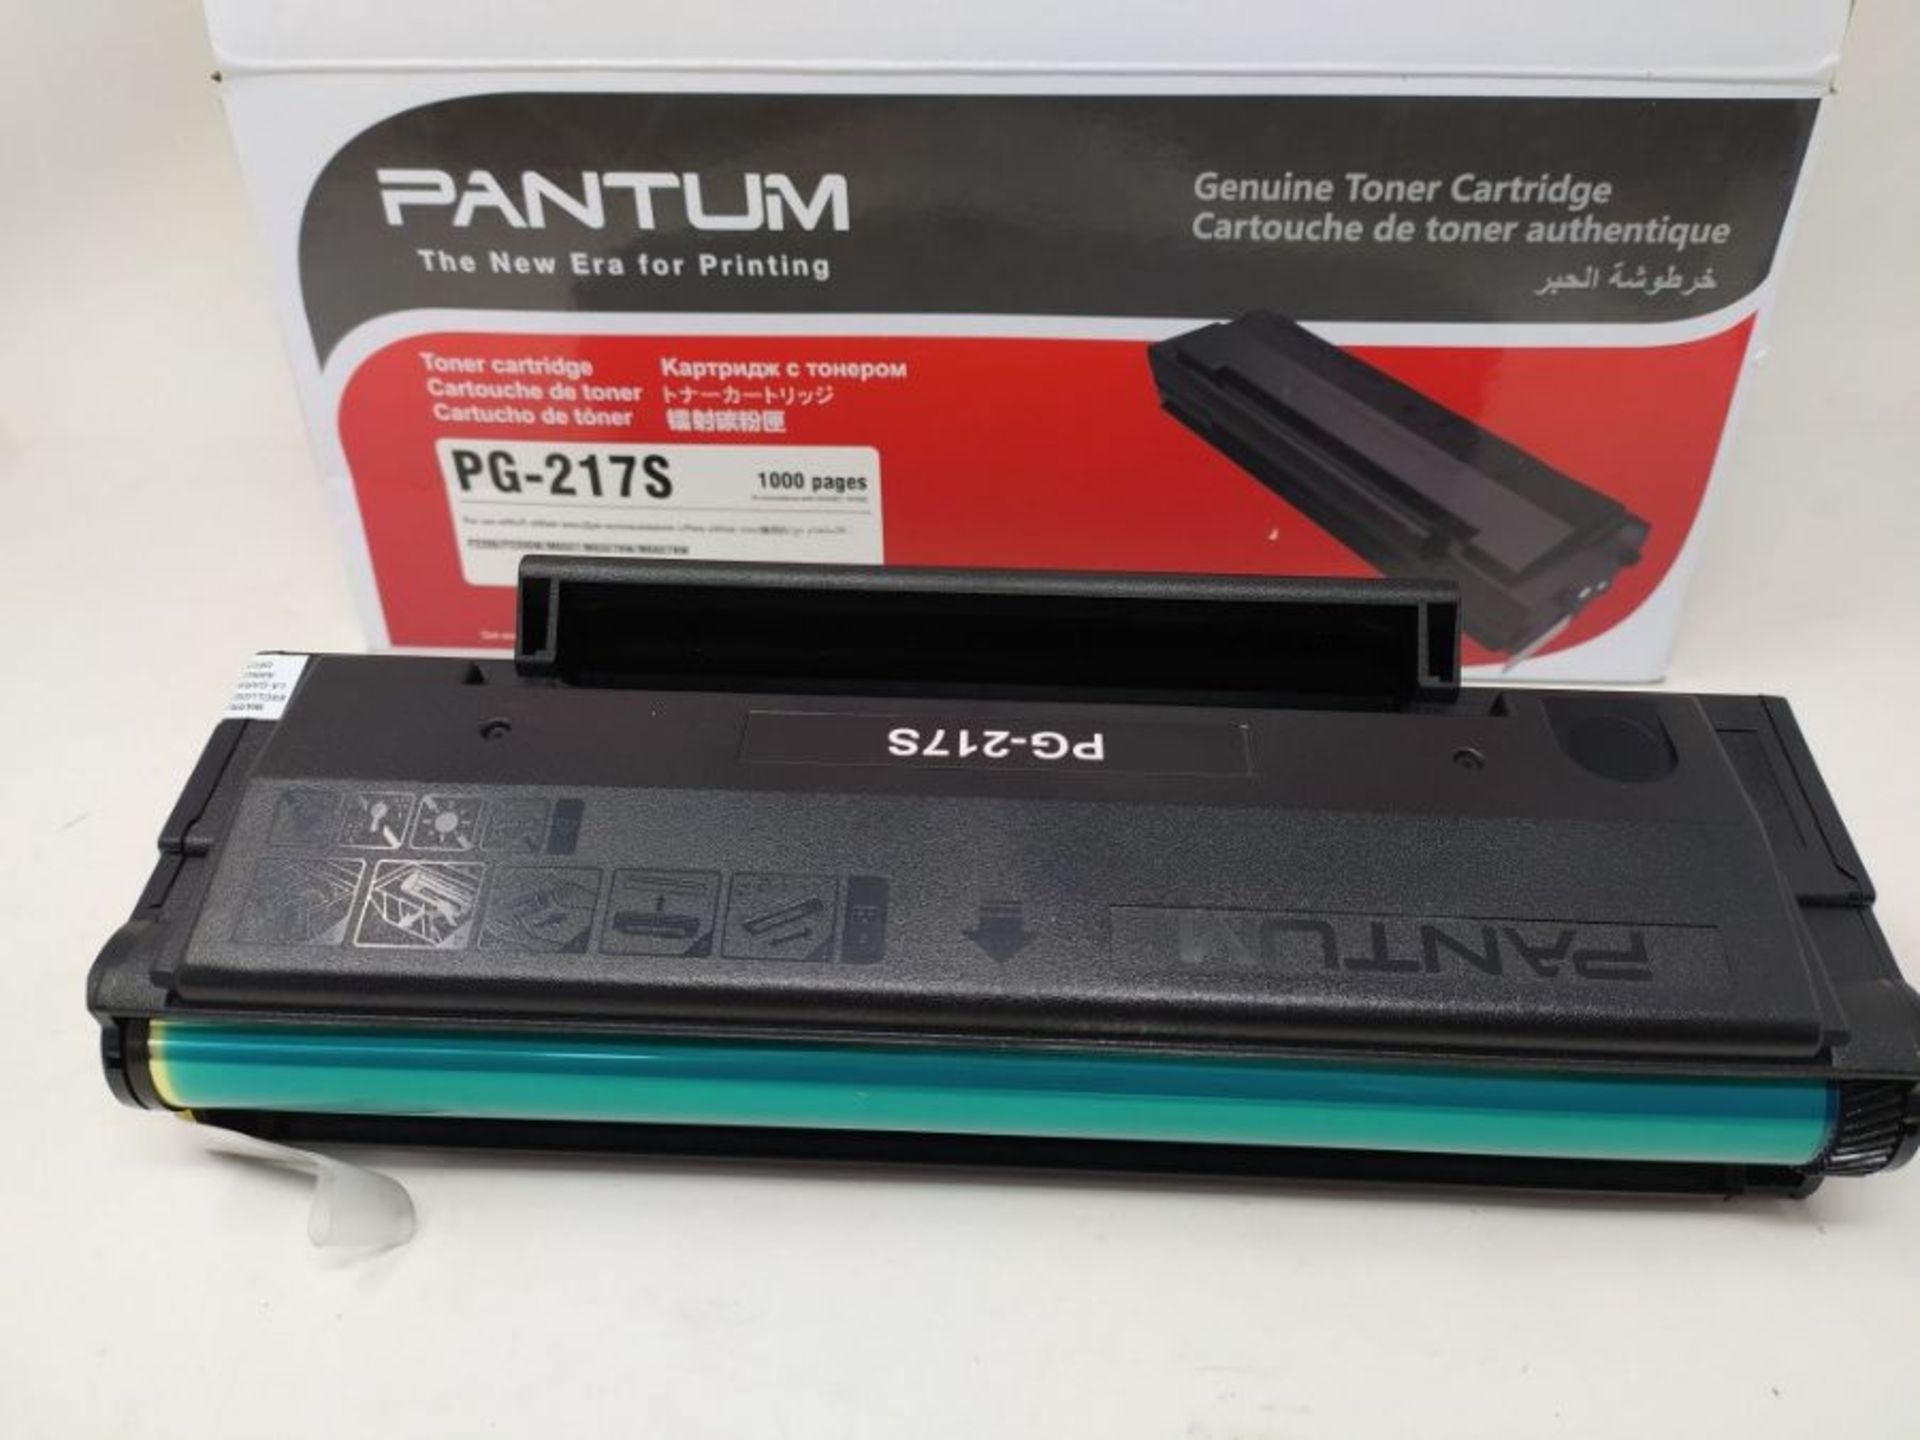 Pantum PG-217S Original Laser Toner Cartridge - Black - Image 2 of 2